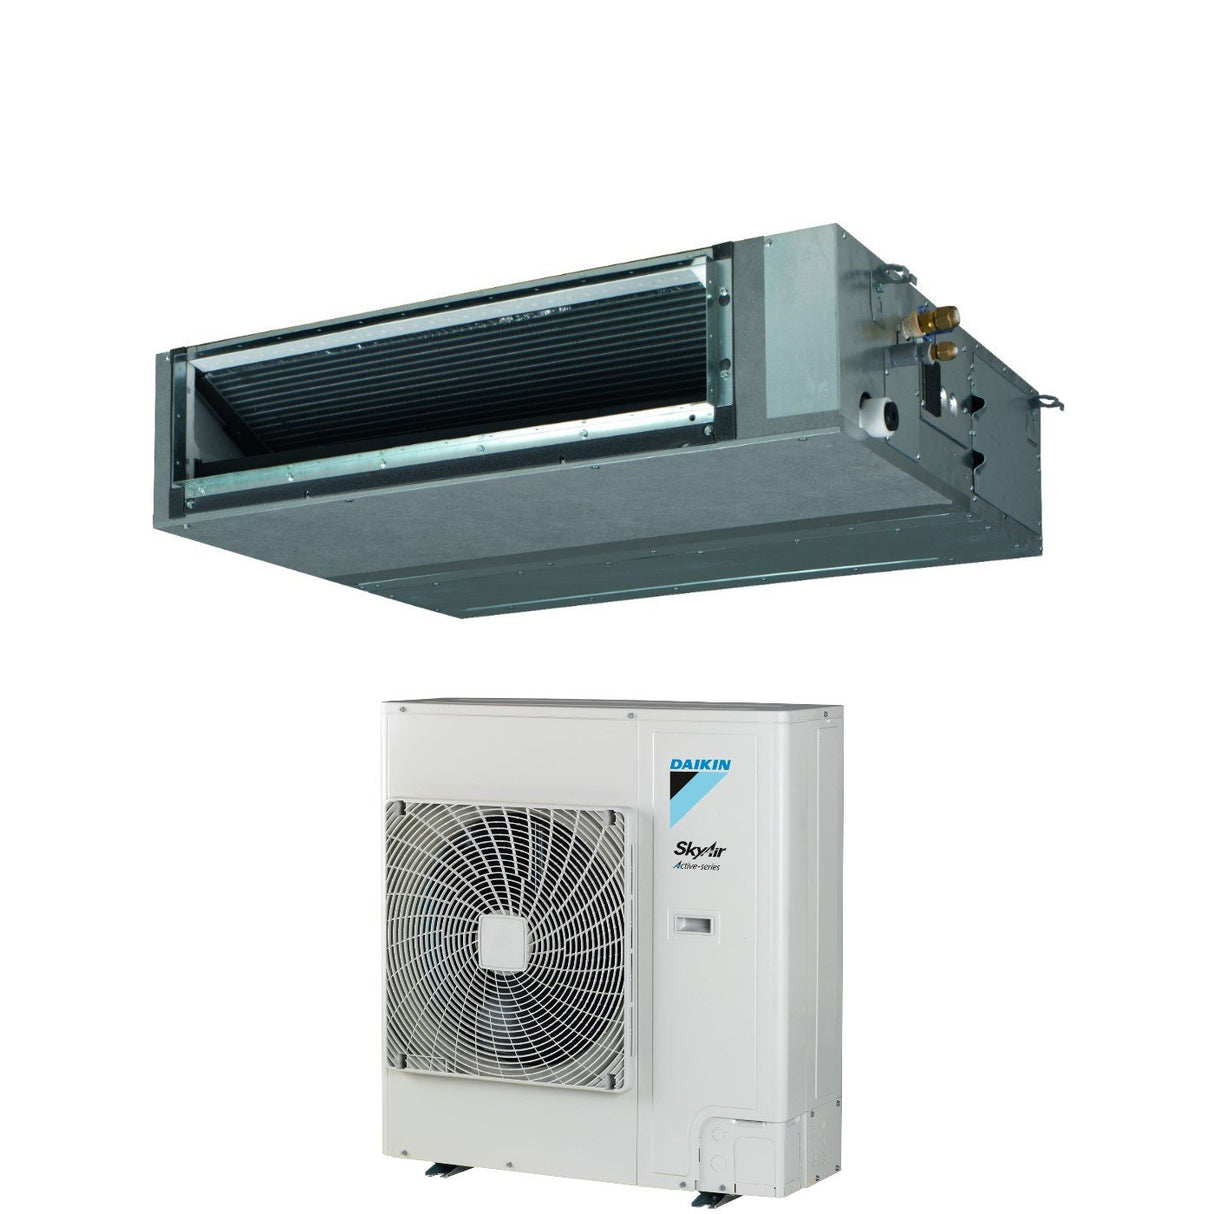 immagine-10-daikin-climatizzatore-condizionatore-daikin-bluevolution-canalizzato-media-prevalenza-36000-btu-fba100a-rzasg100mv1-monofase-r-32-wi-fi-optional